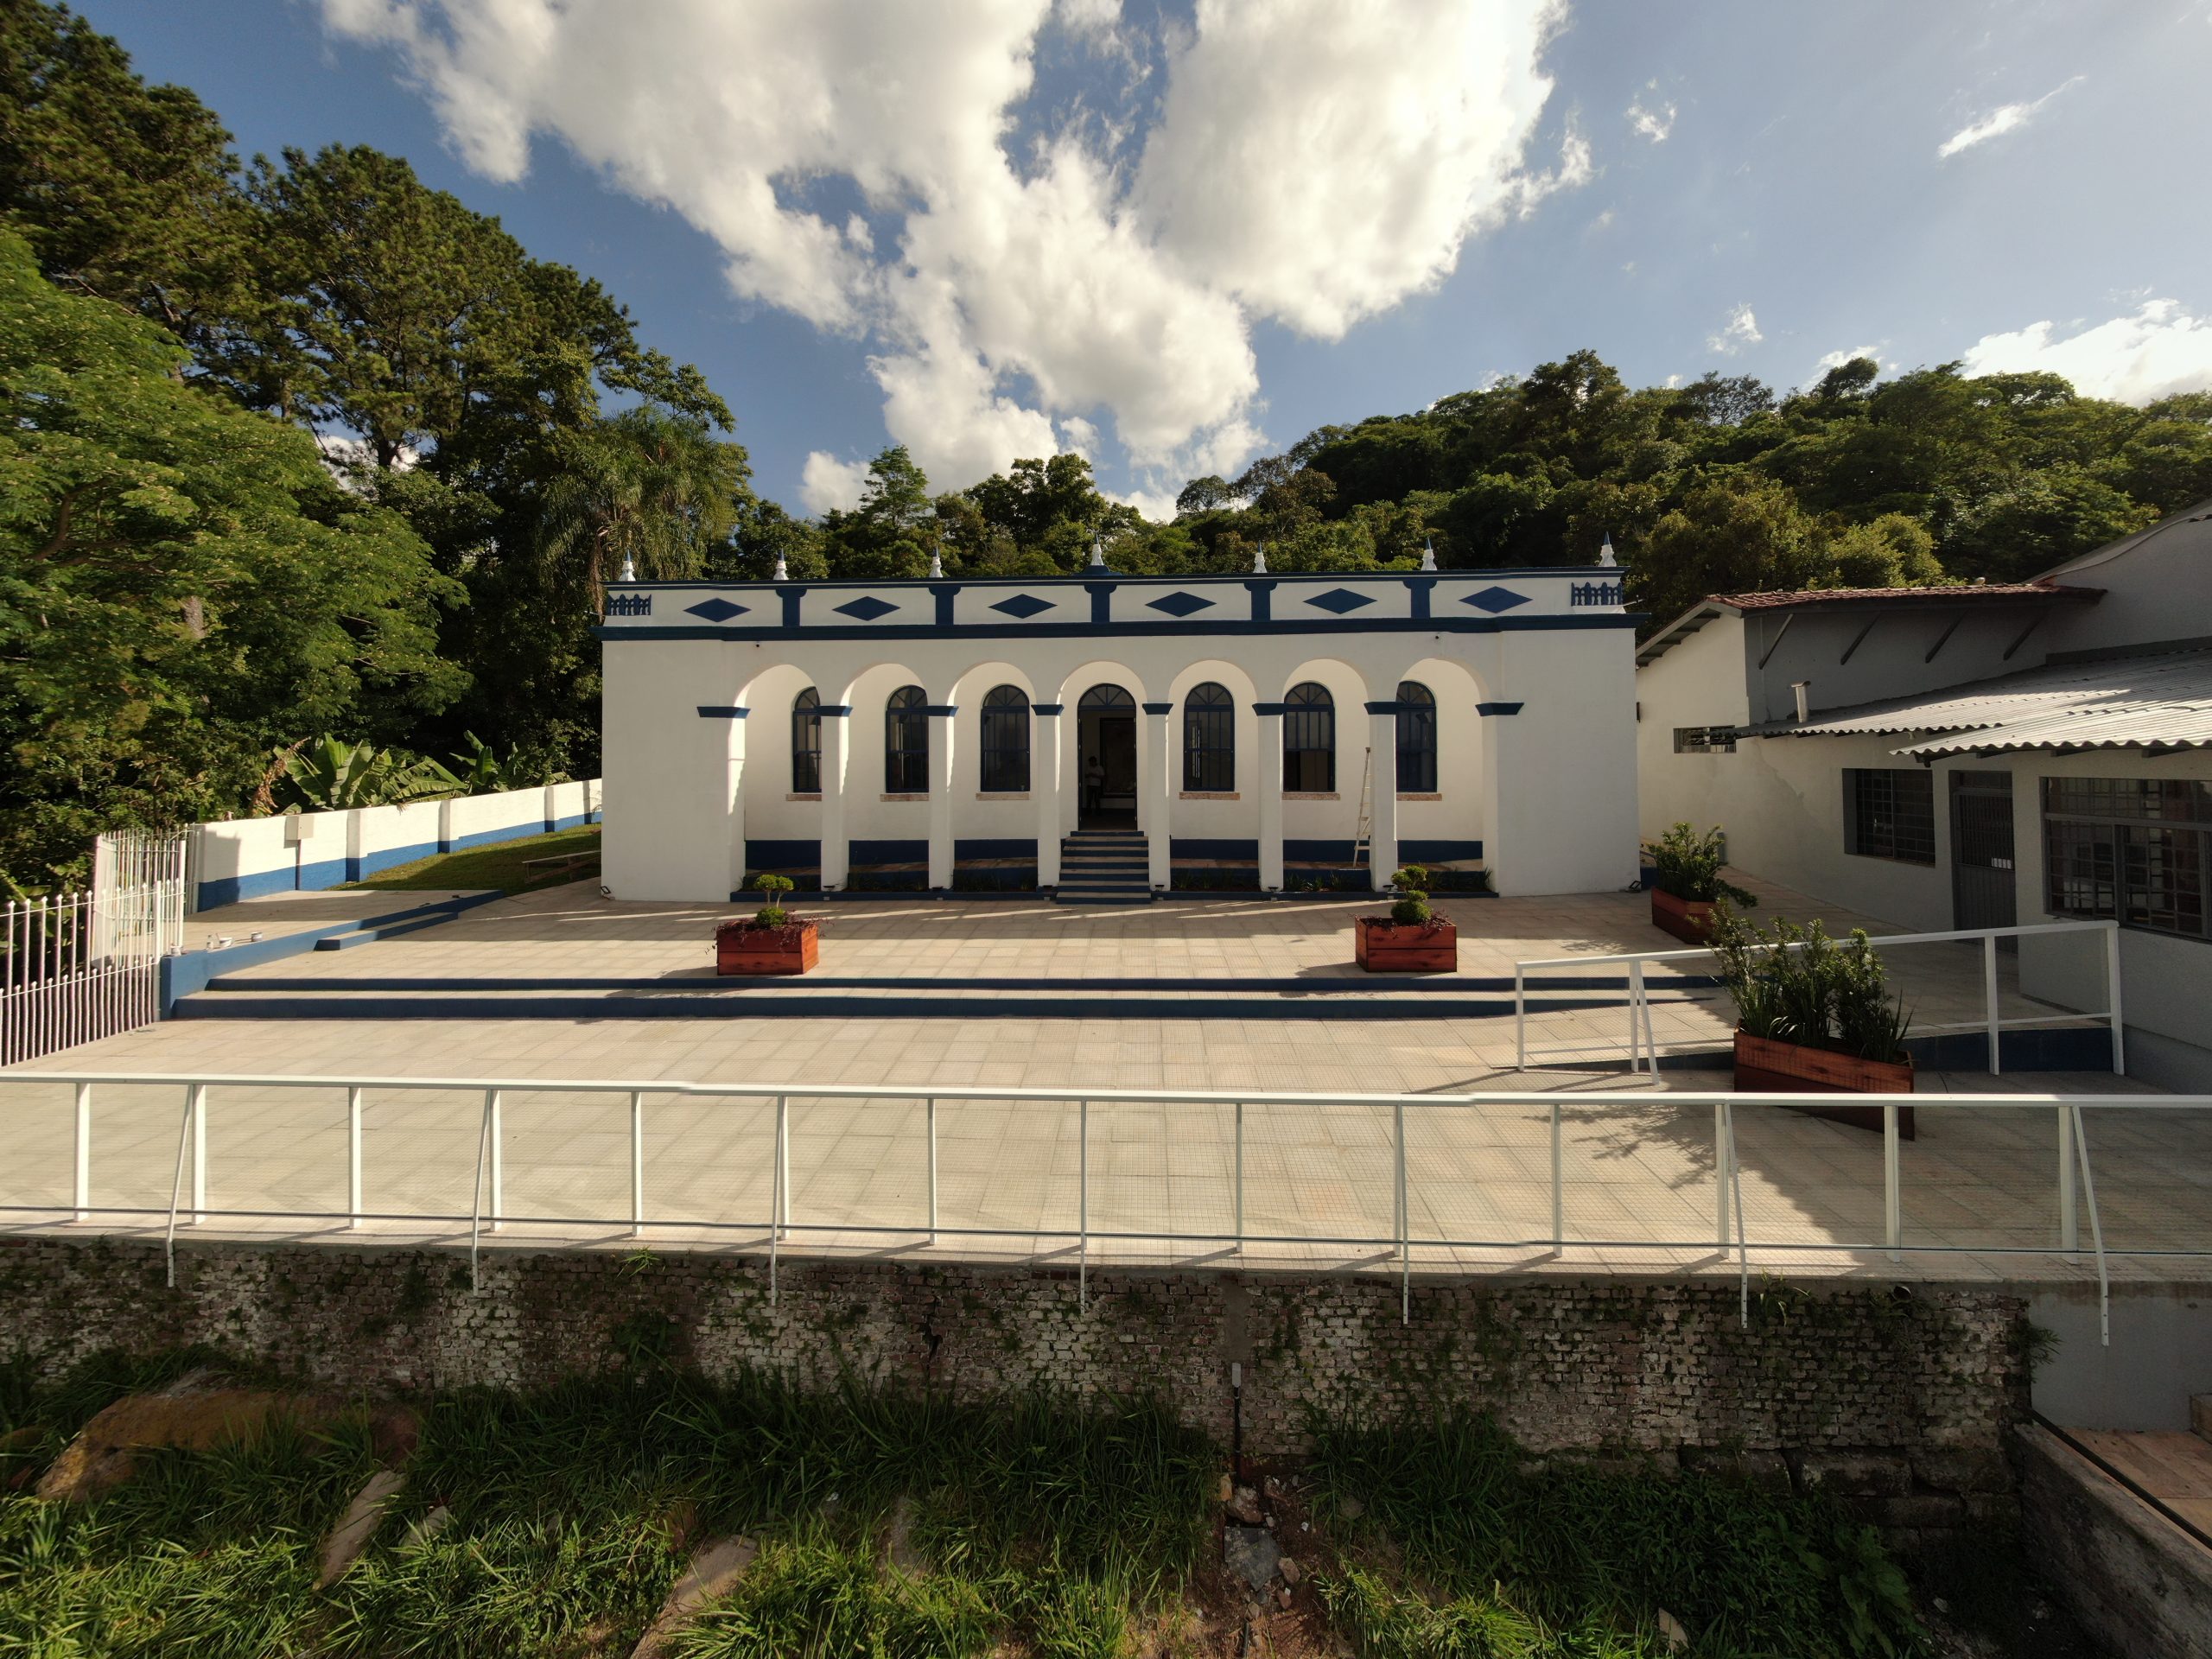 Casa do Construtor reinaugura em Rio das Pedras